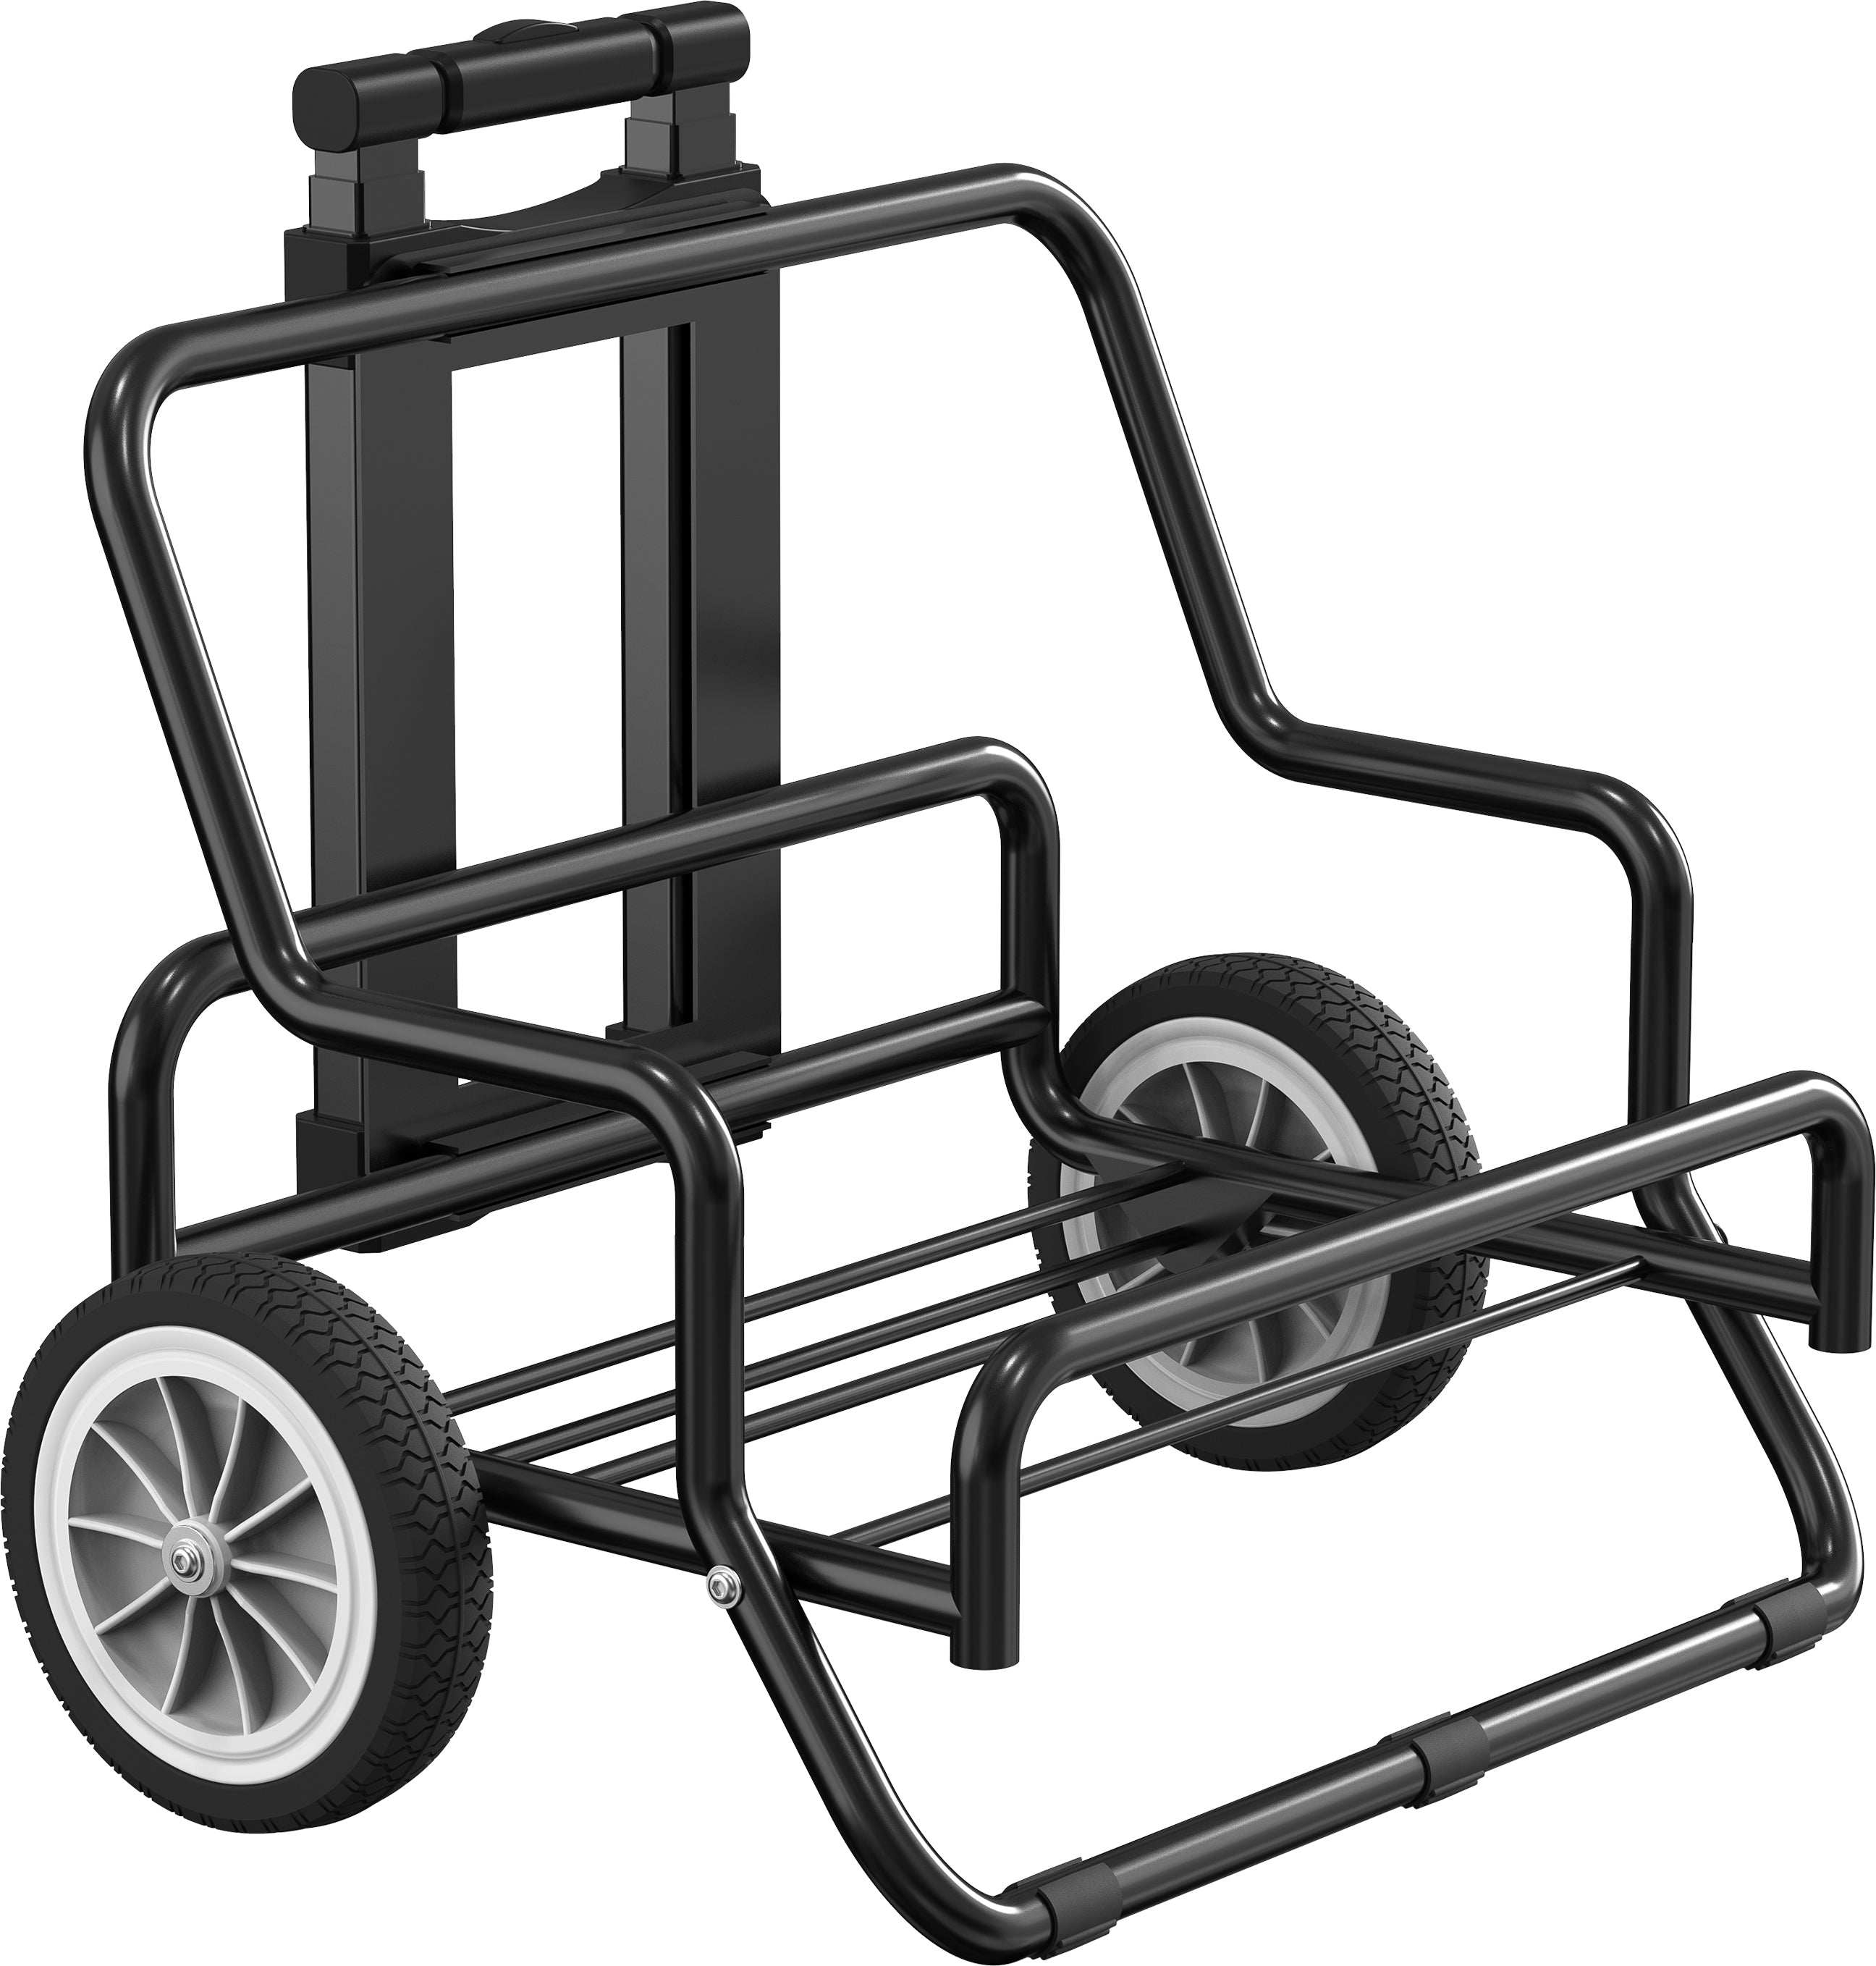 PECRON Trolley Kit For E3600LFP/E2000LFP/E1500LFP